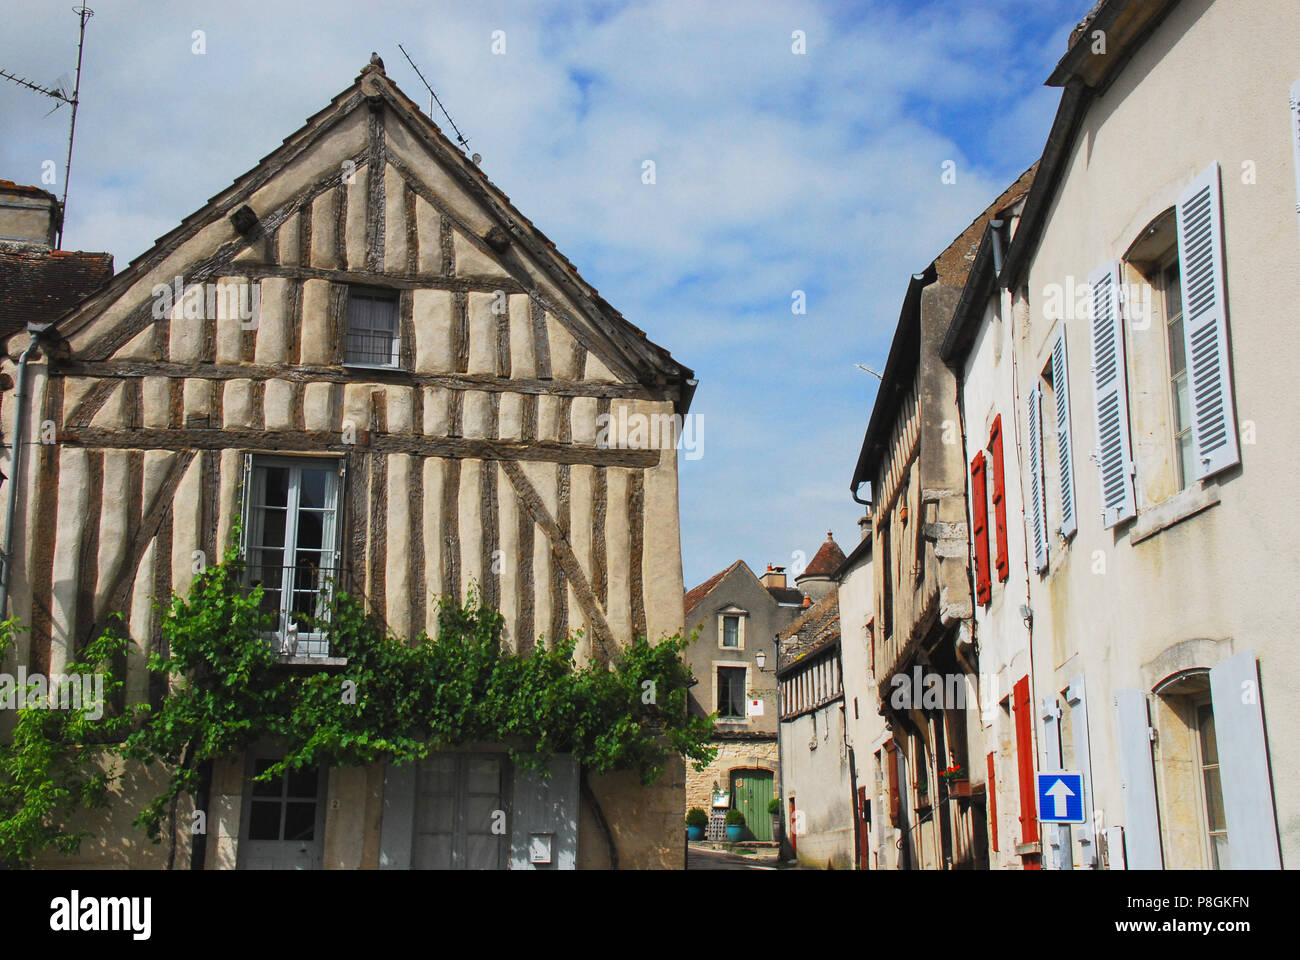 Eine alte historische Straße in dem charmanten Dorf Noyers sur Serein, Frankreich. Noyers ist offiziell als eines der schönsten Dörfer bekannt Stockfoto